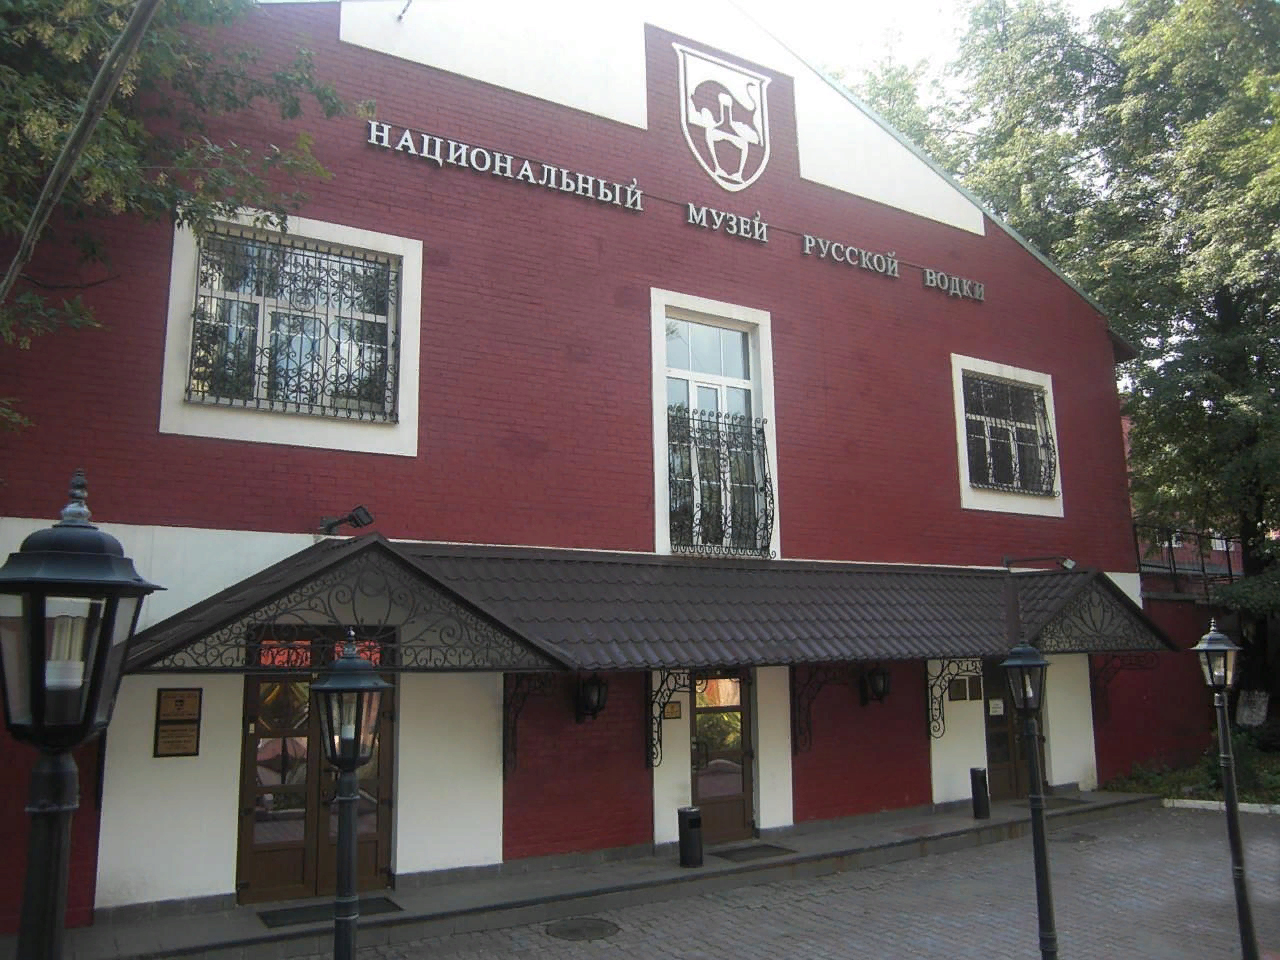 Выставочный зал Национального музея русской водки на Самокатной улице